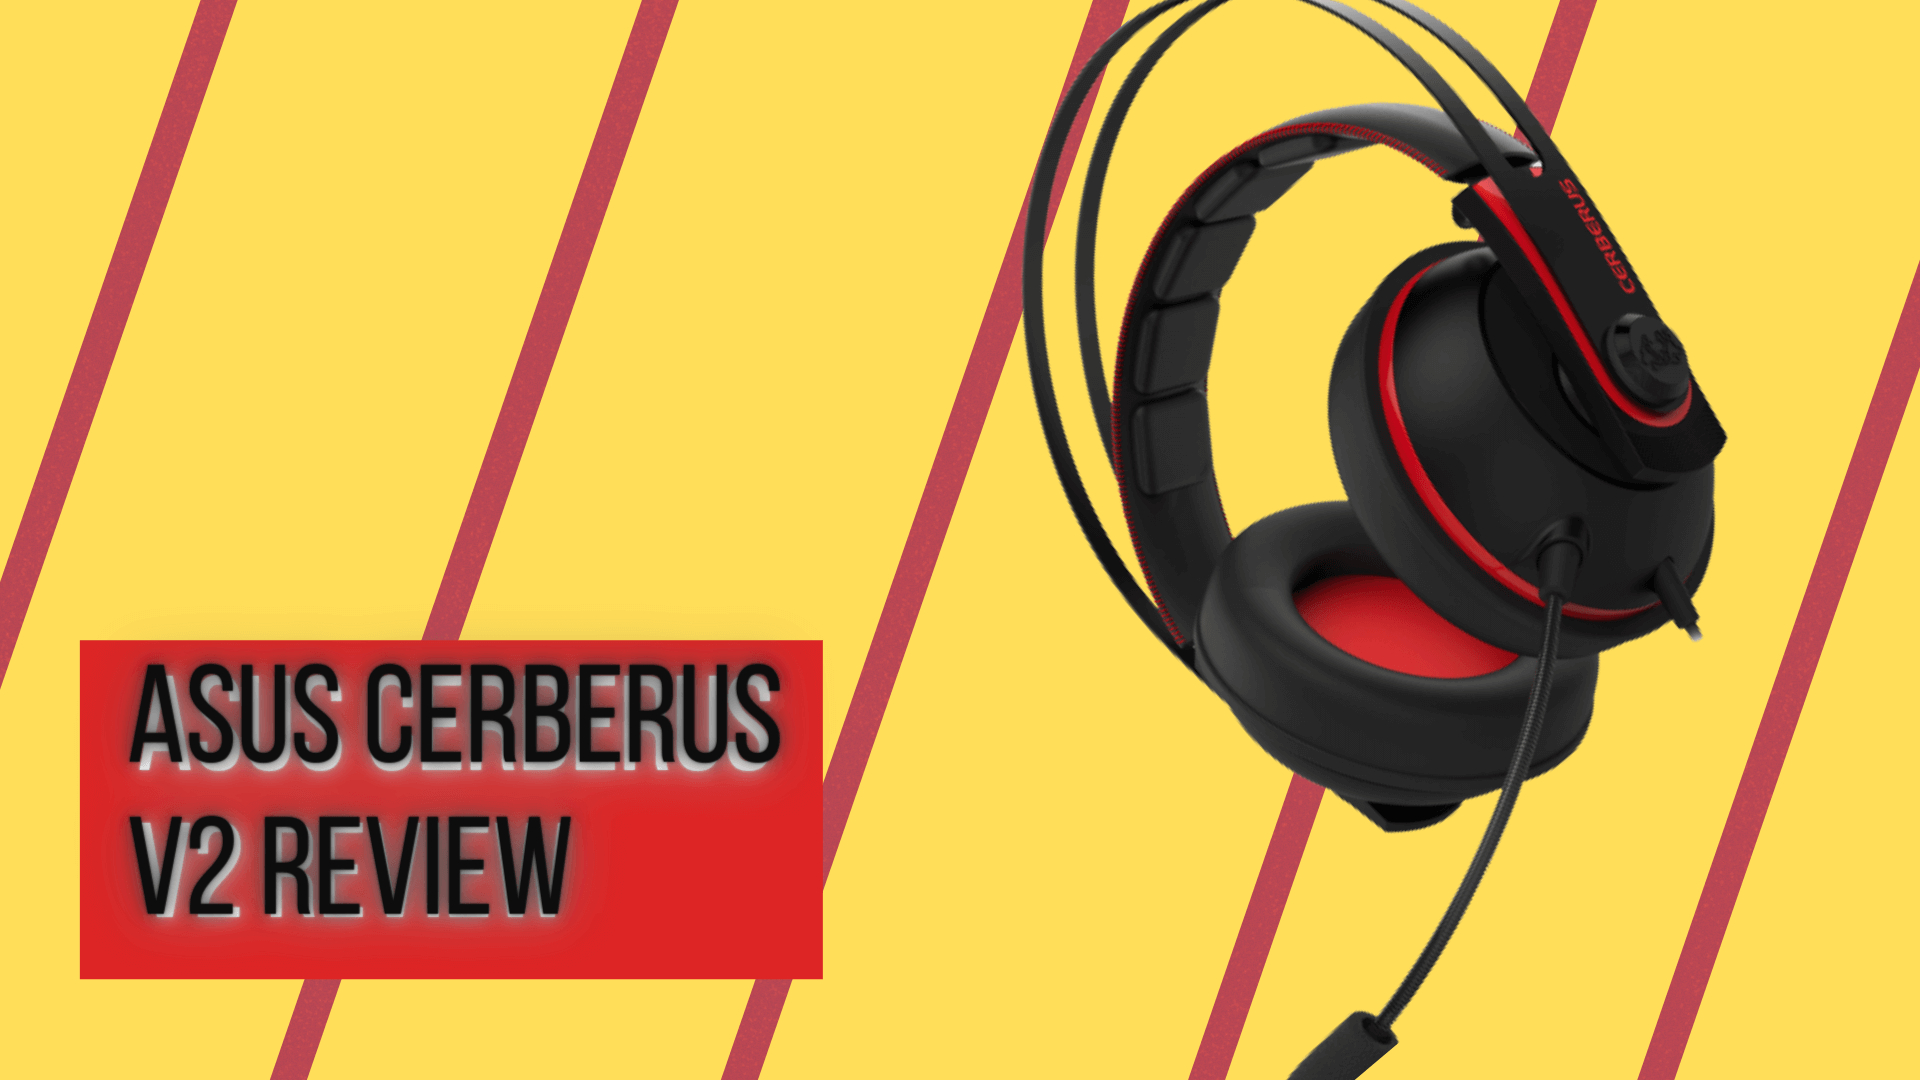 Asus Cerberus V2 Review